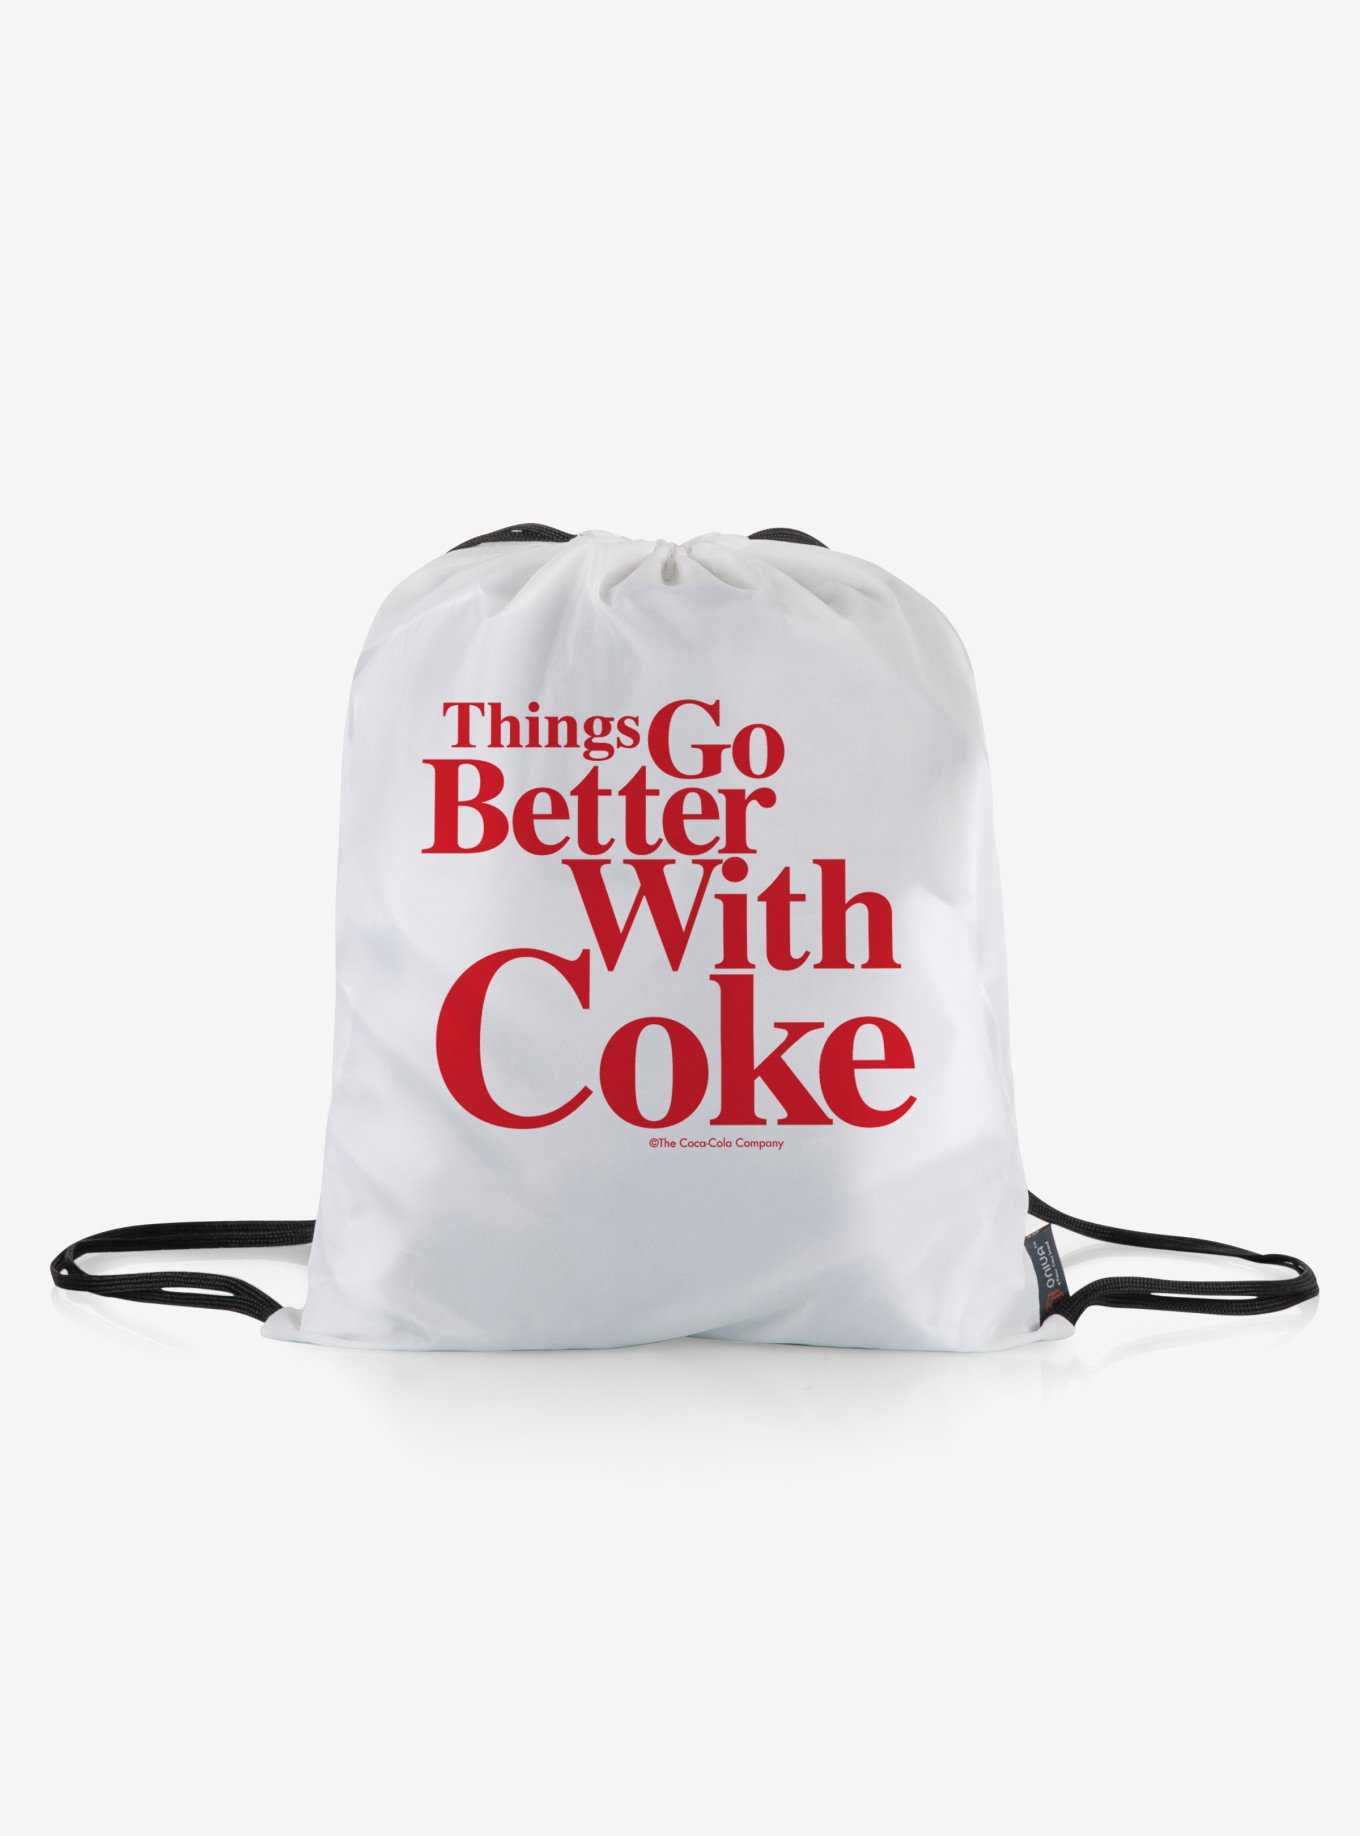 Coca-Cola Coke Impresa Picnic Blanket, , hi-res